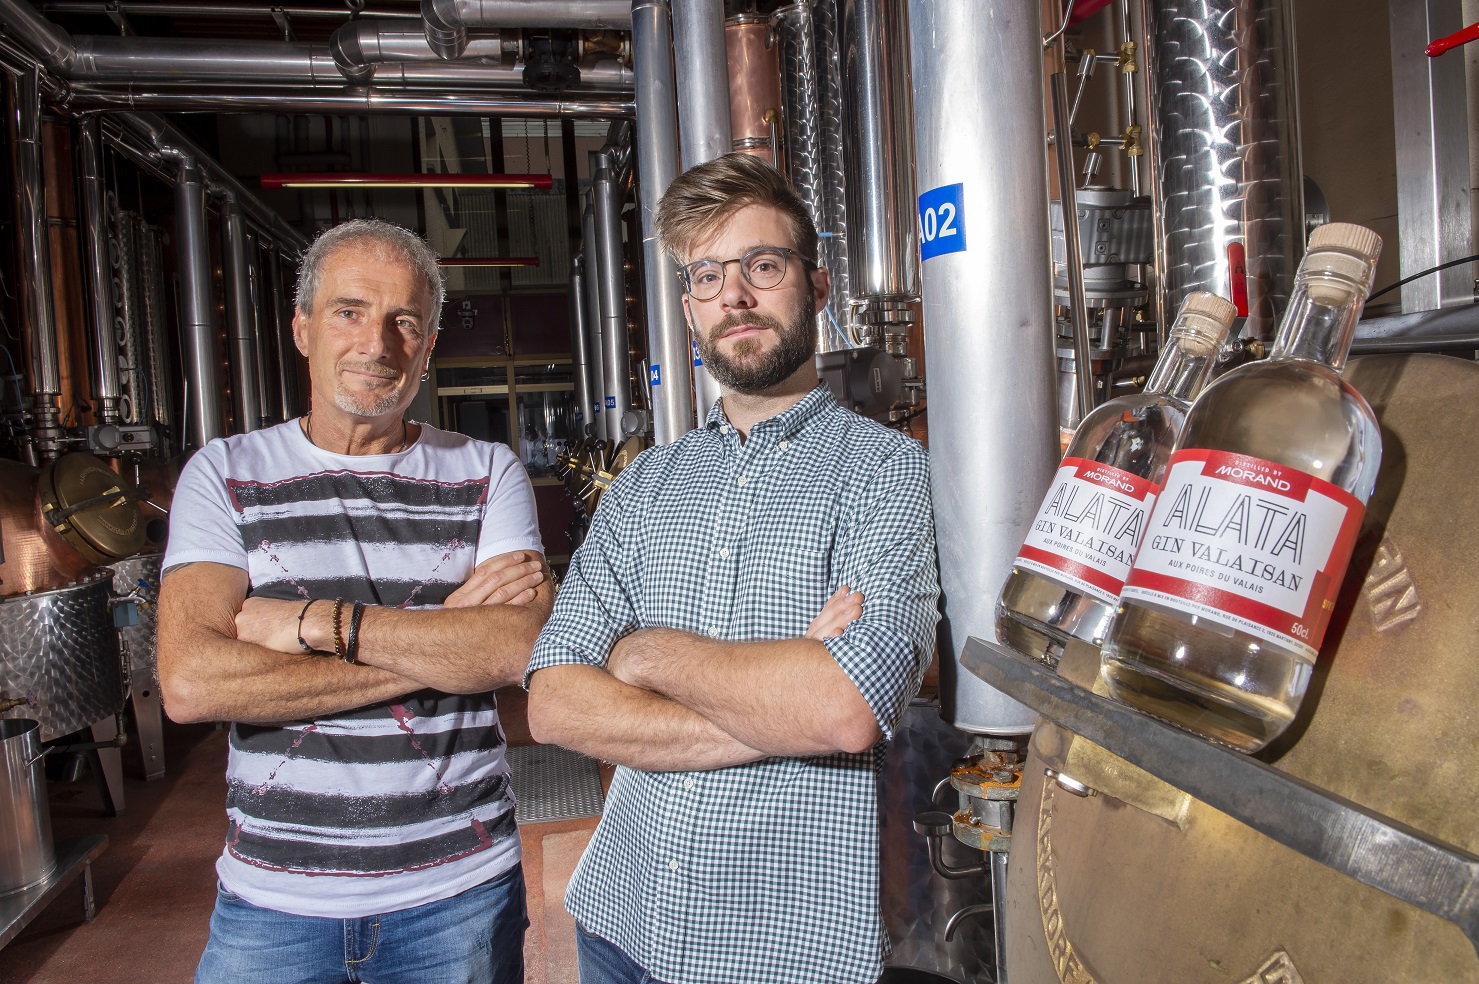 L'œnologue Thierry Manta (à gauche) et le fondateur d'Alata Hugo Pozzo di Borgo présentent le gin valaisan, fruit de la collaboration de la distillerie Morand et du producteur d'apéritifs valaisans.